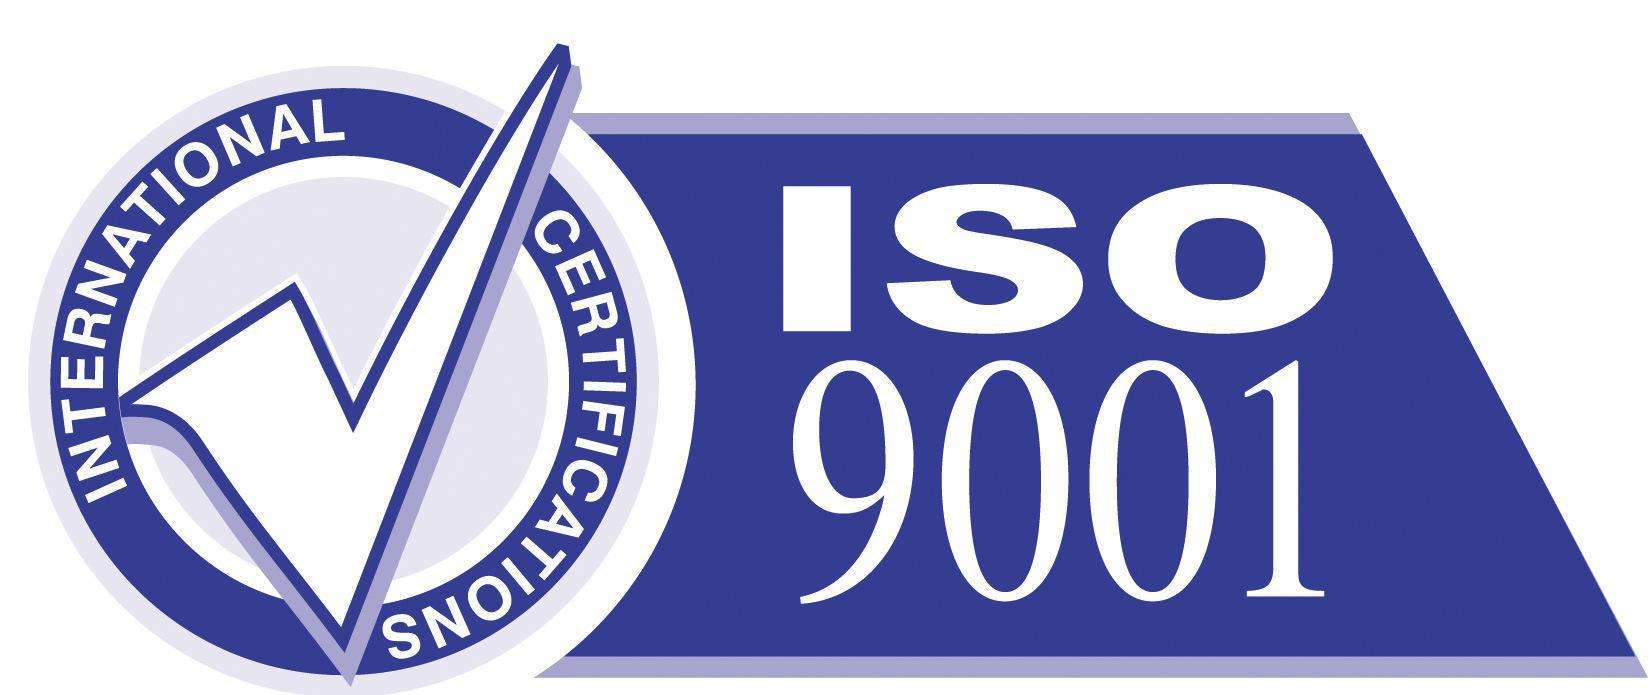 良好公司為什么利用這次iso9001體系認證改版